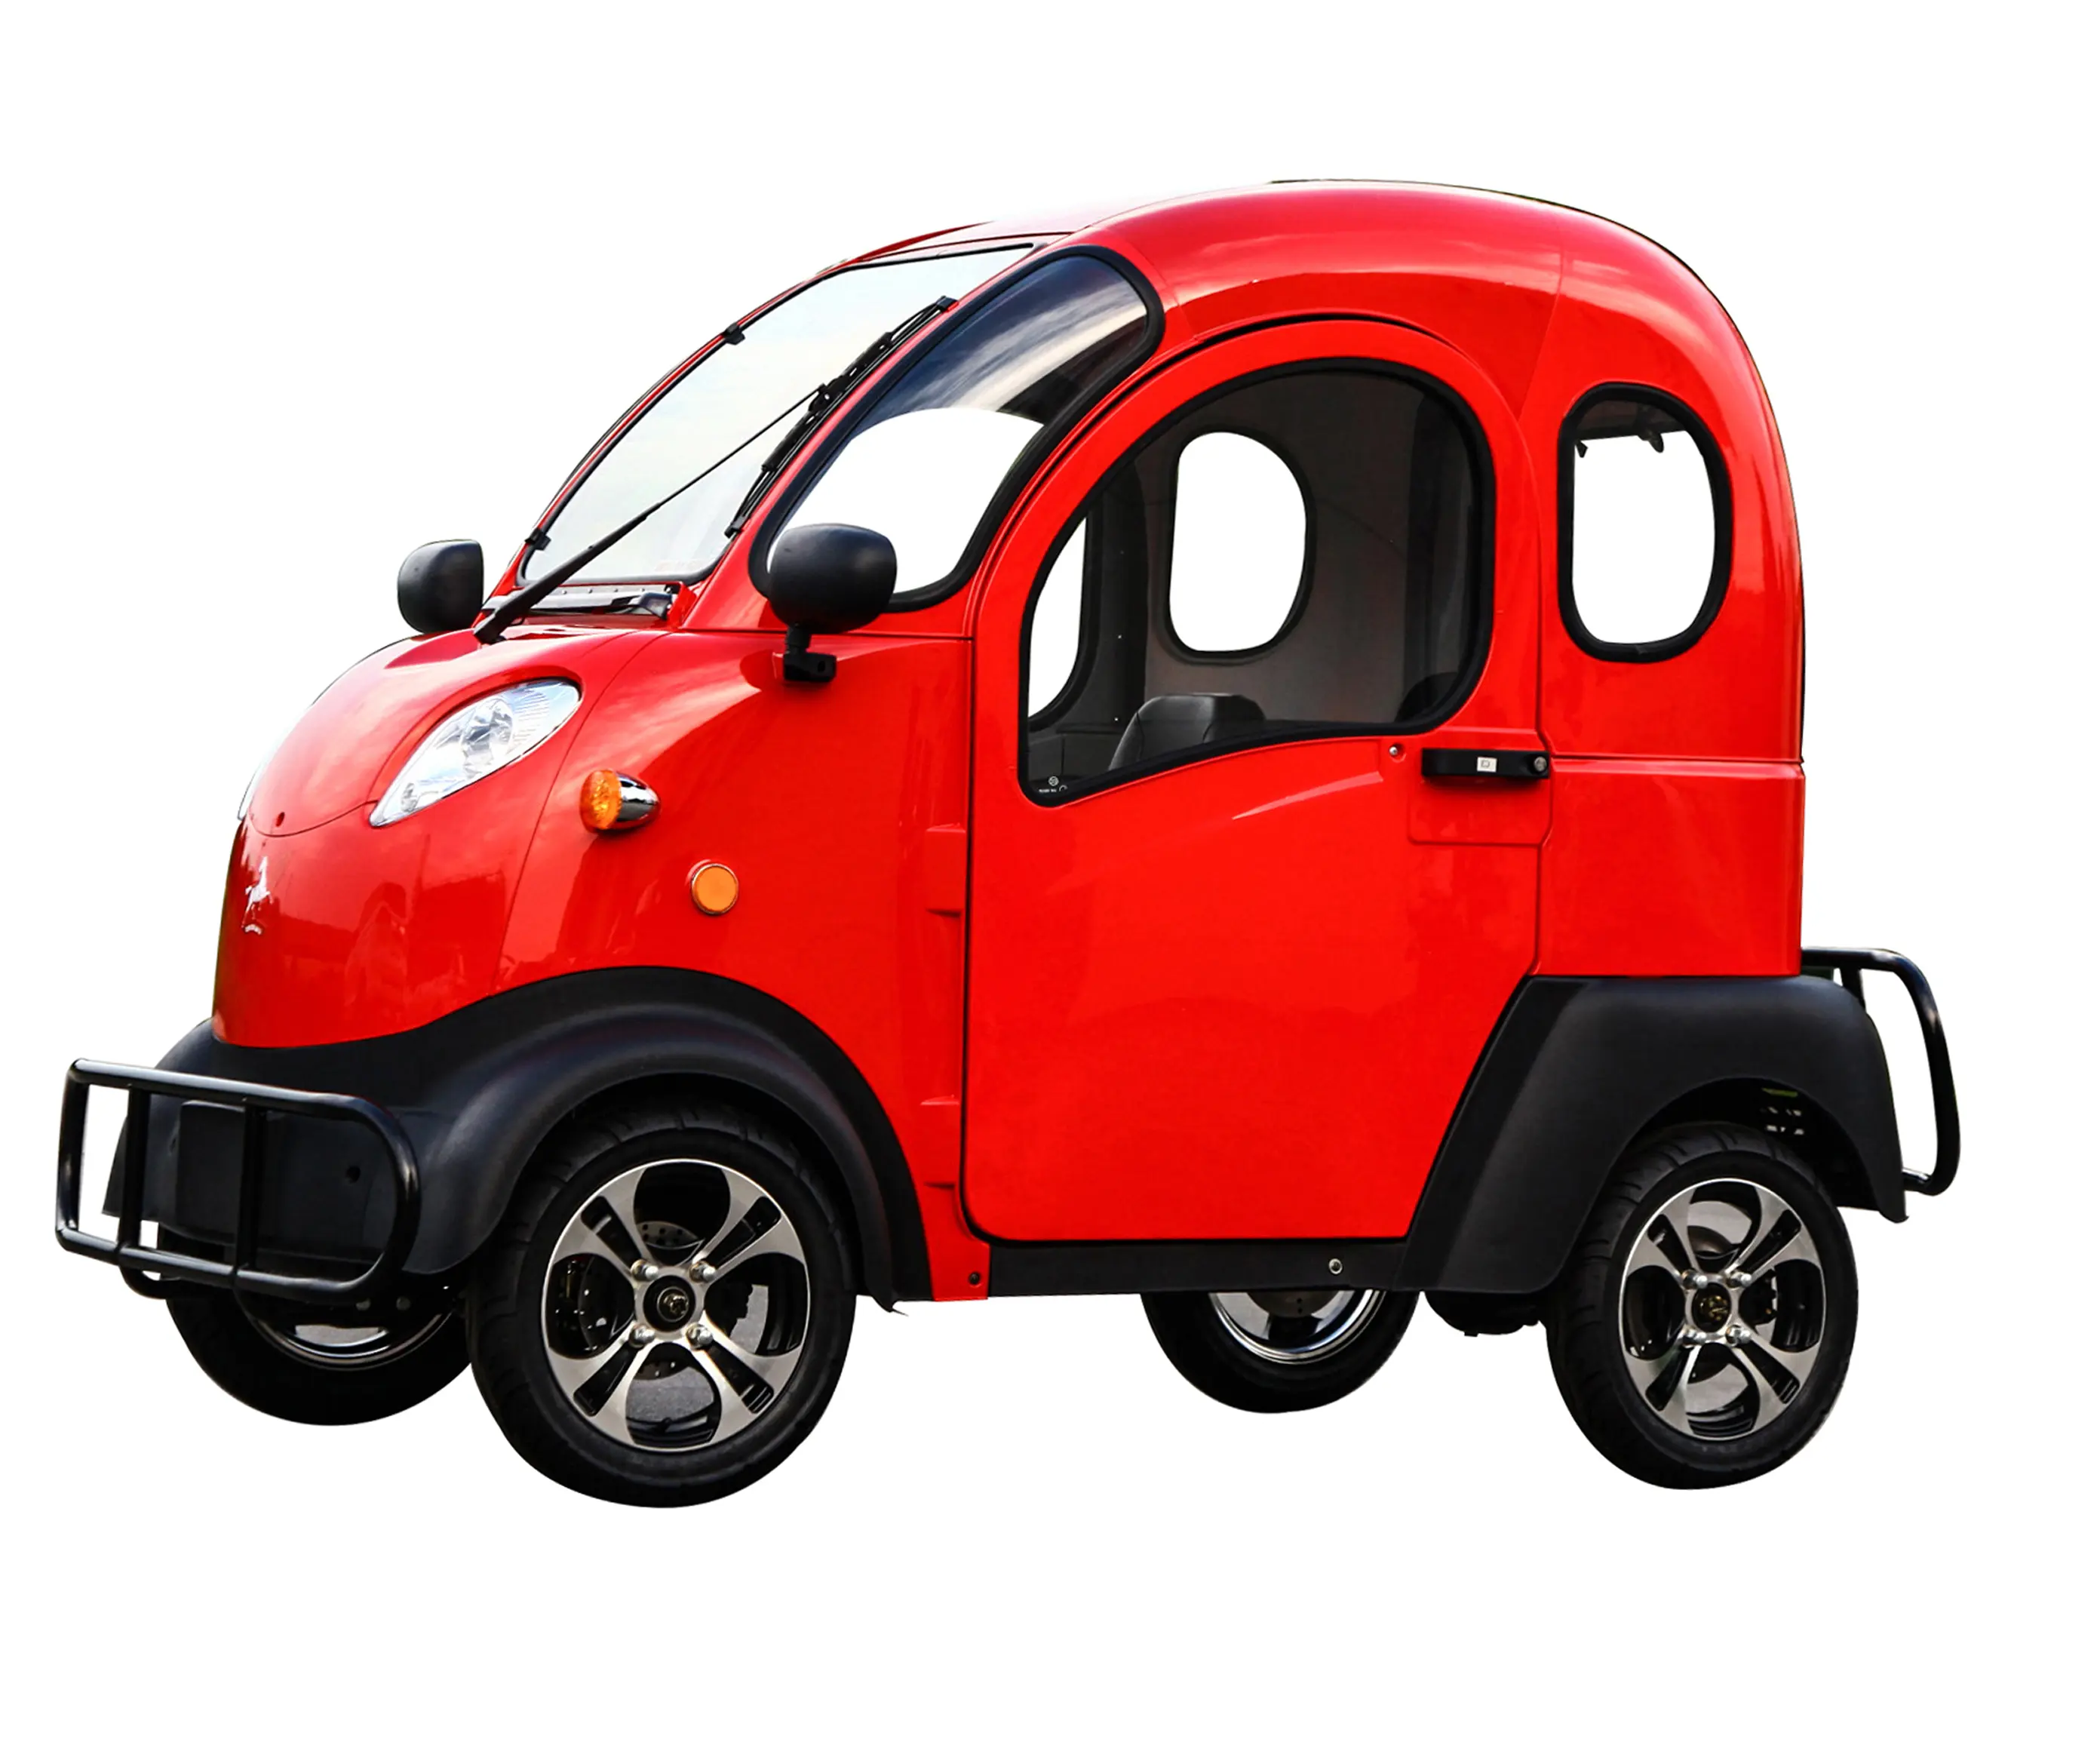 الموردين مباشرة توريد 2019 الصغير الحديثة 2500w سيارة كهربائية رخيصة للبيع